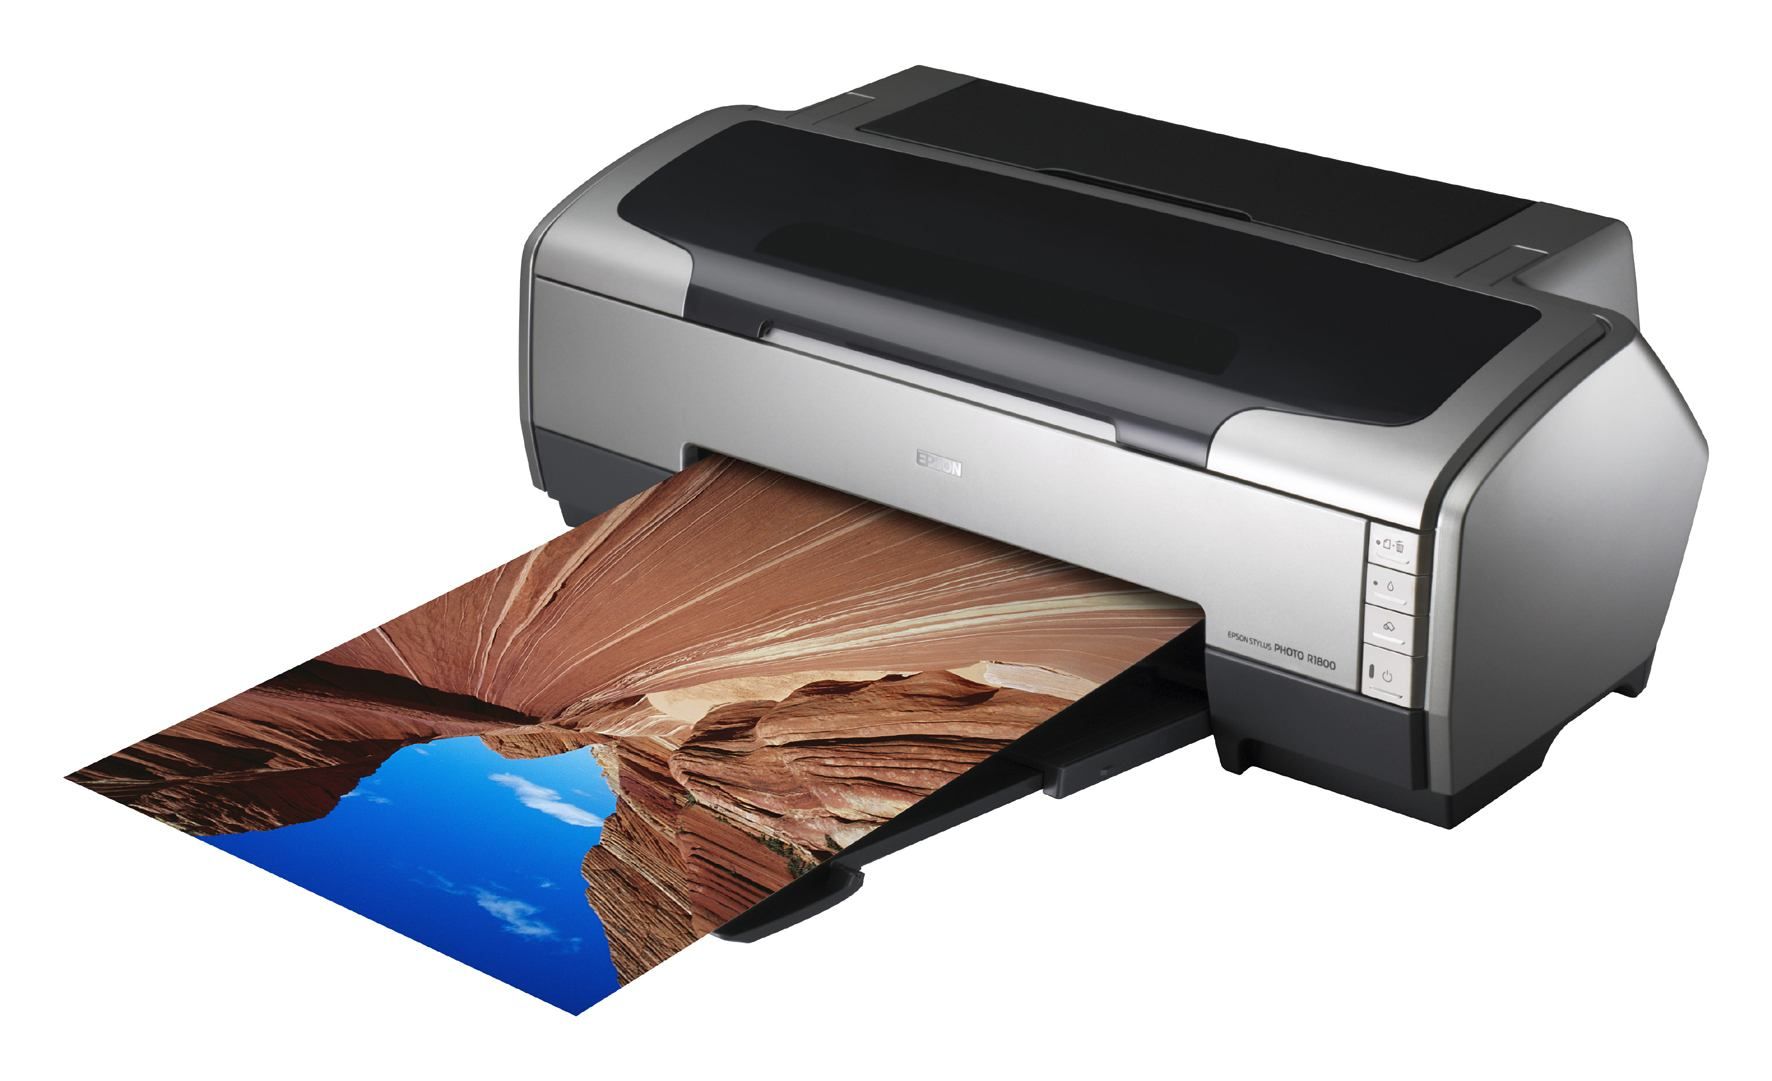 Самый лучший принтер для печати фотографий